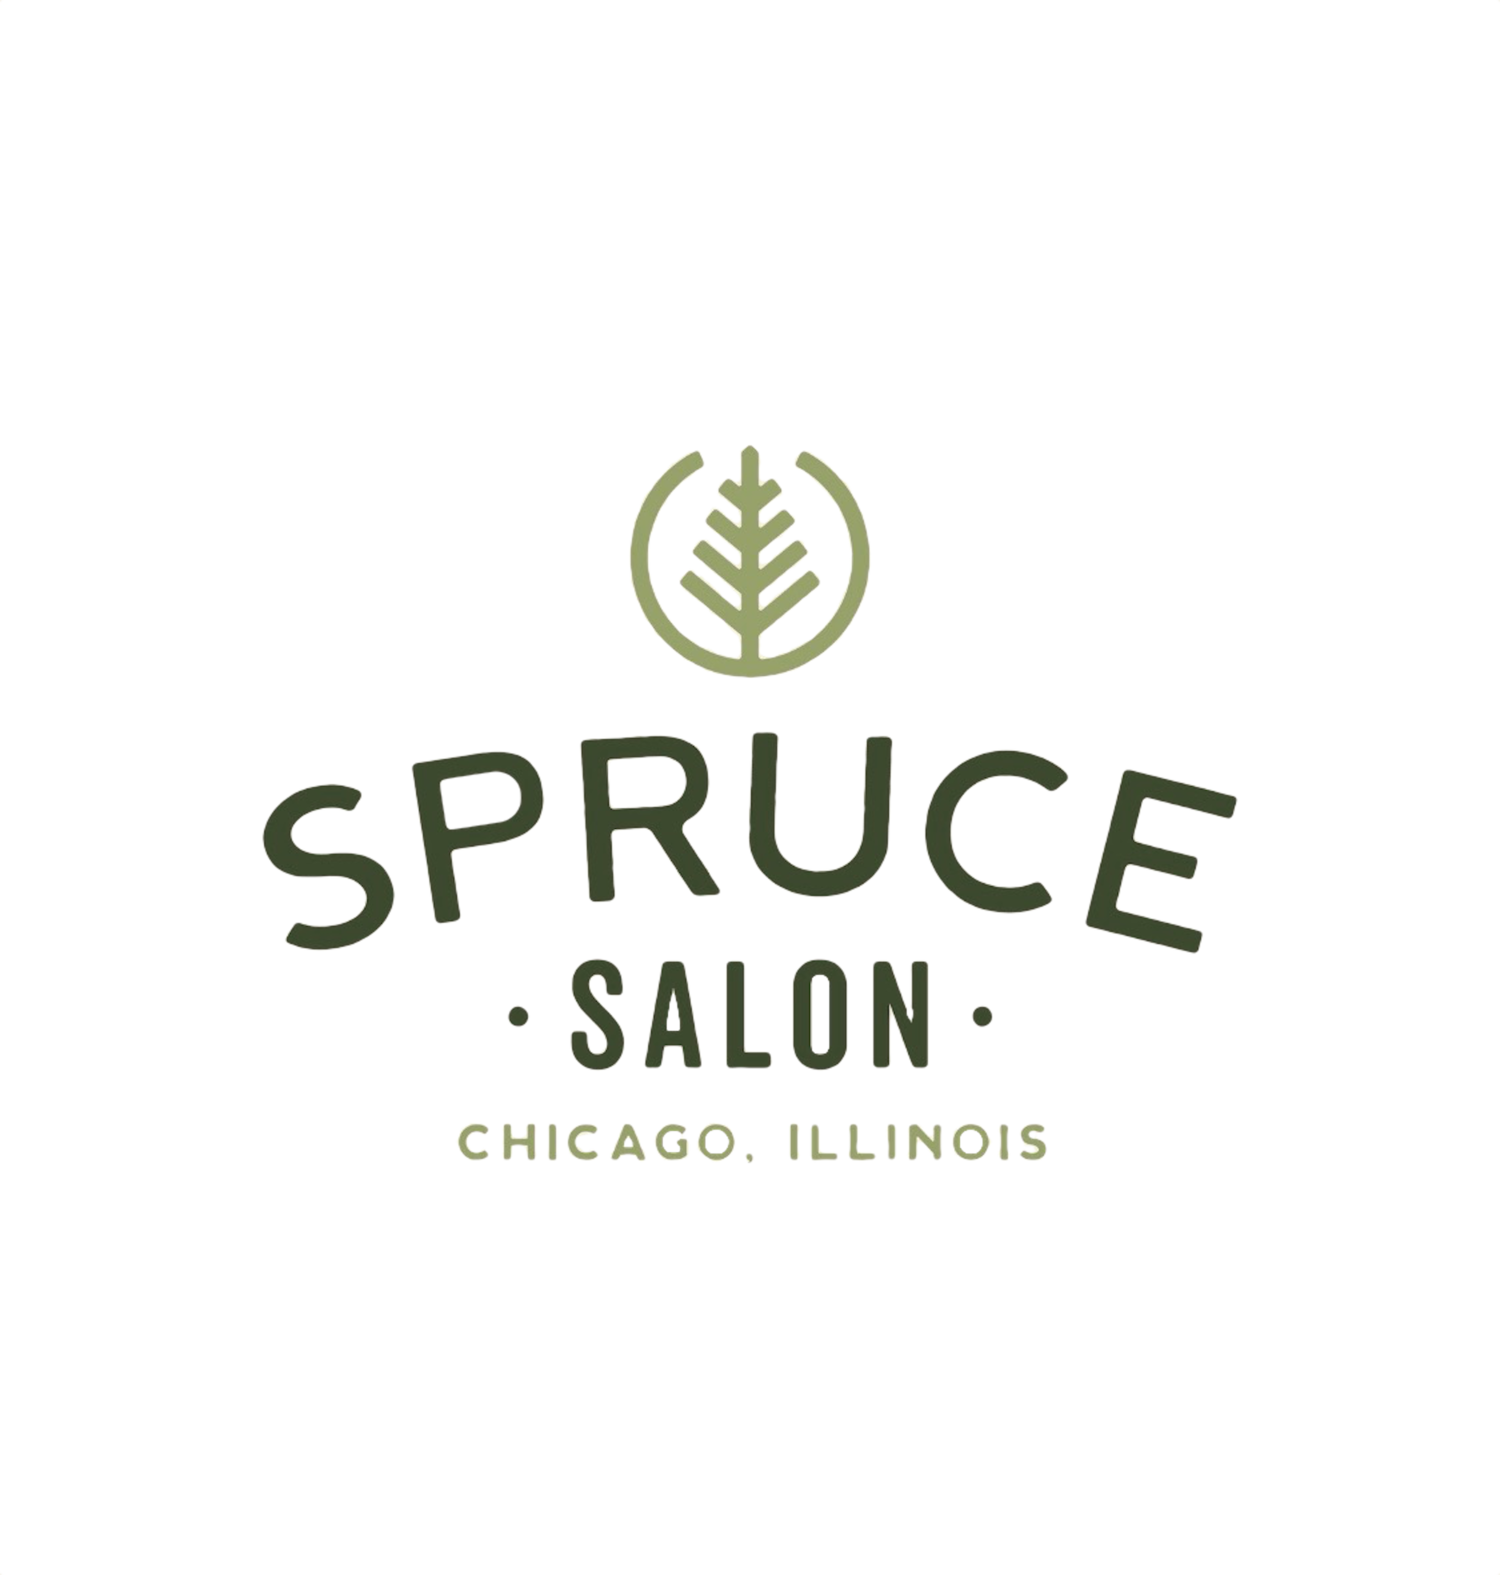 Spruce Salon Chicago